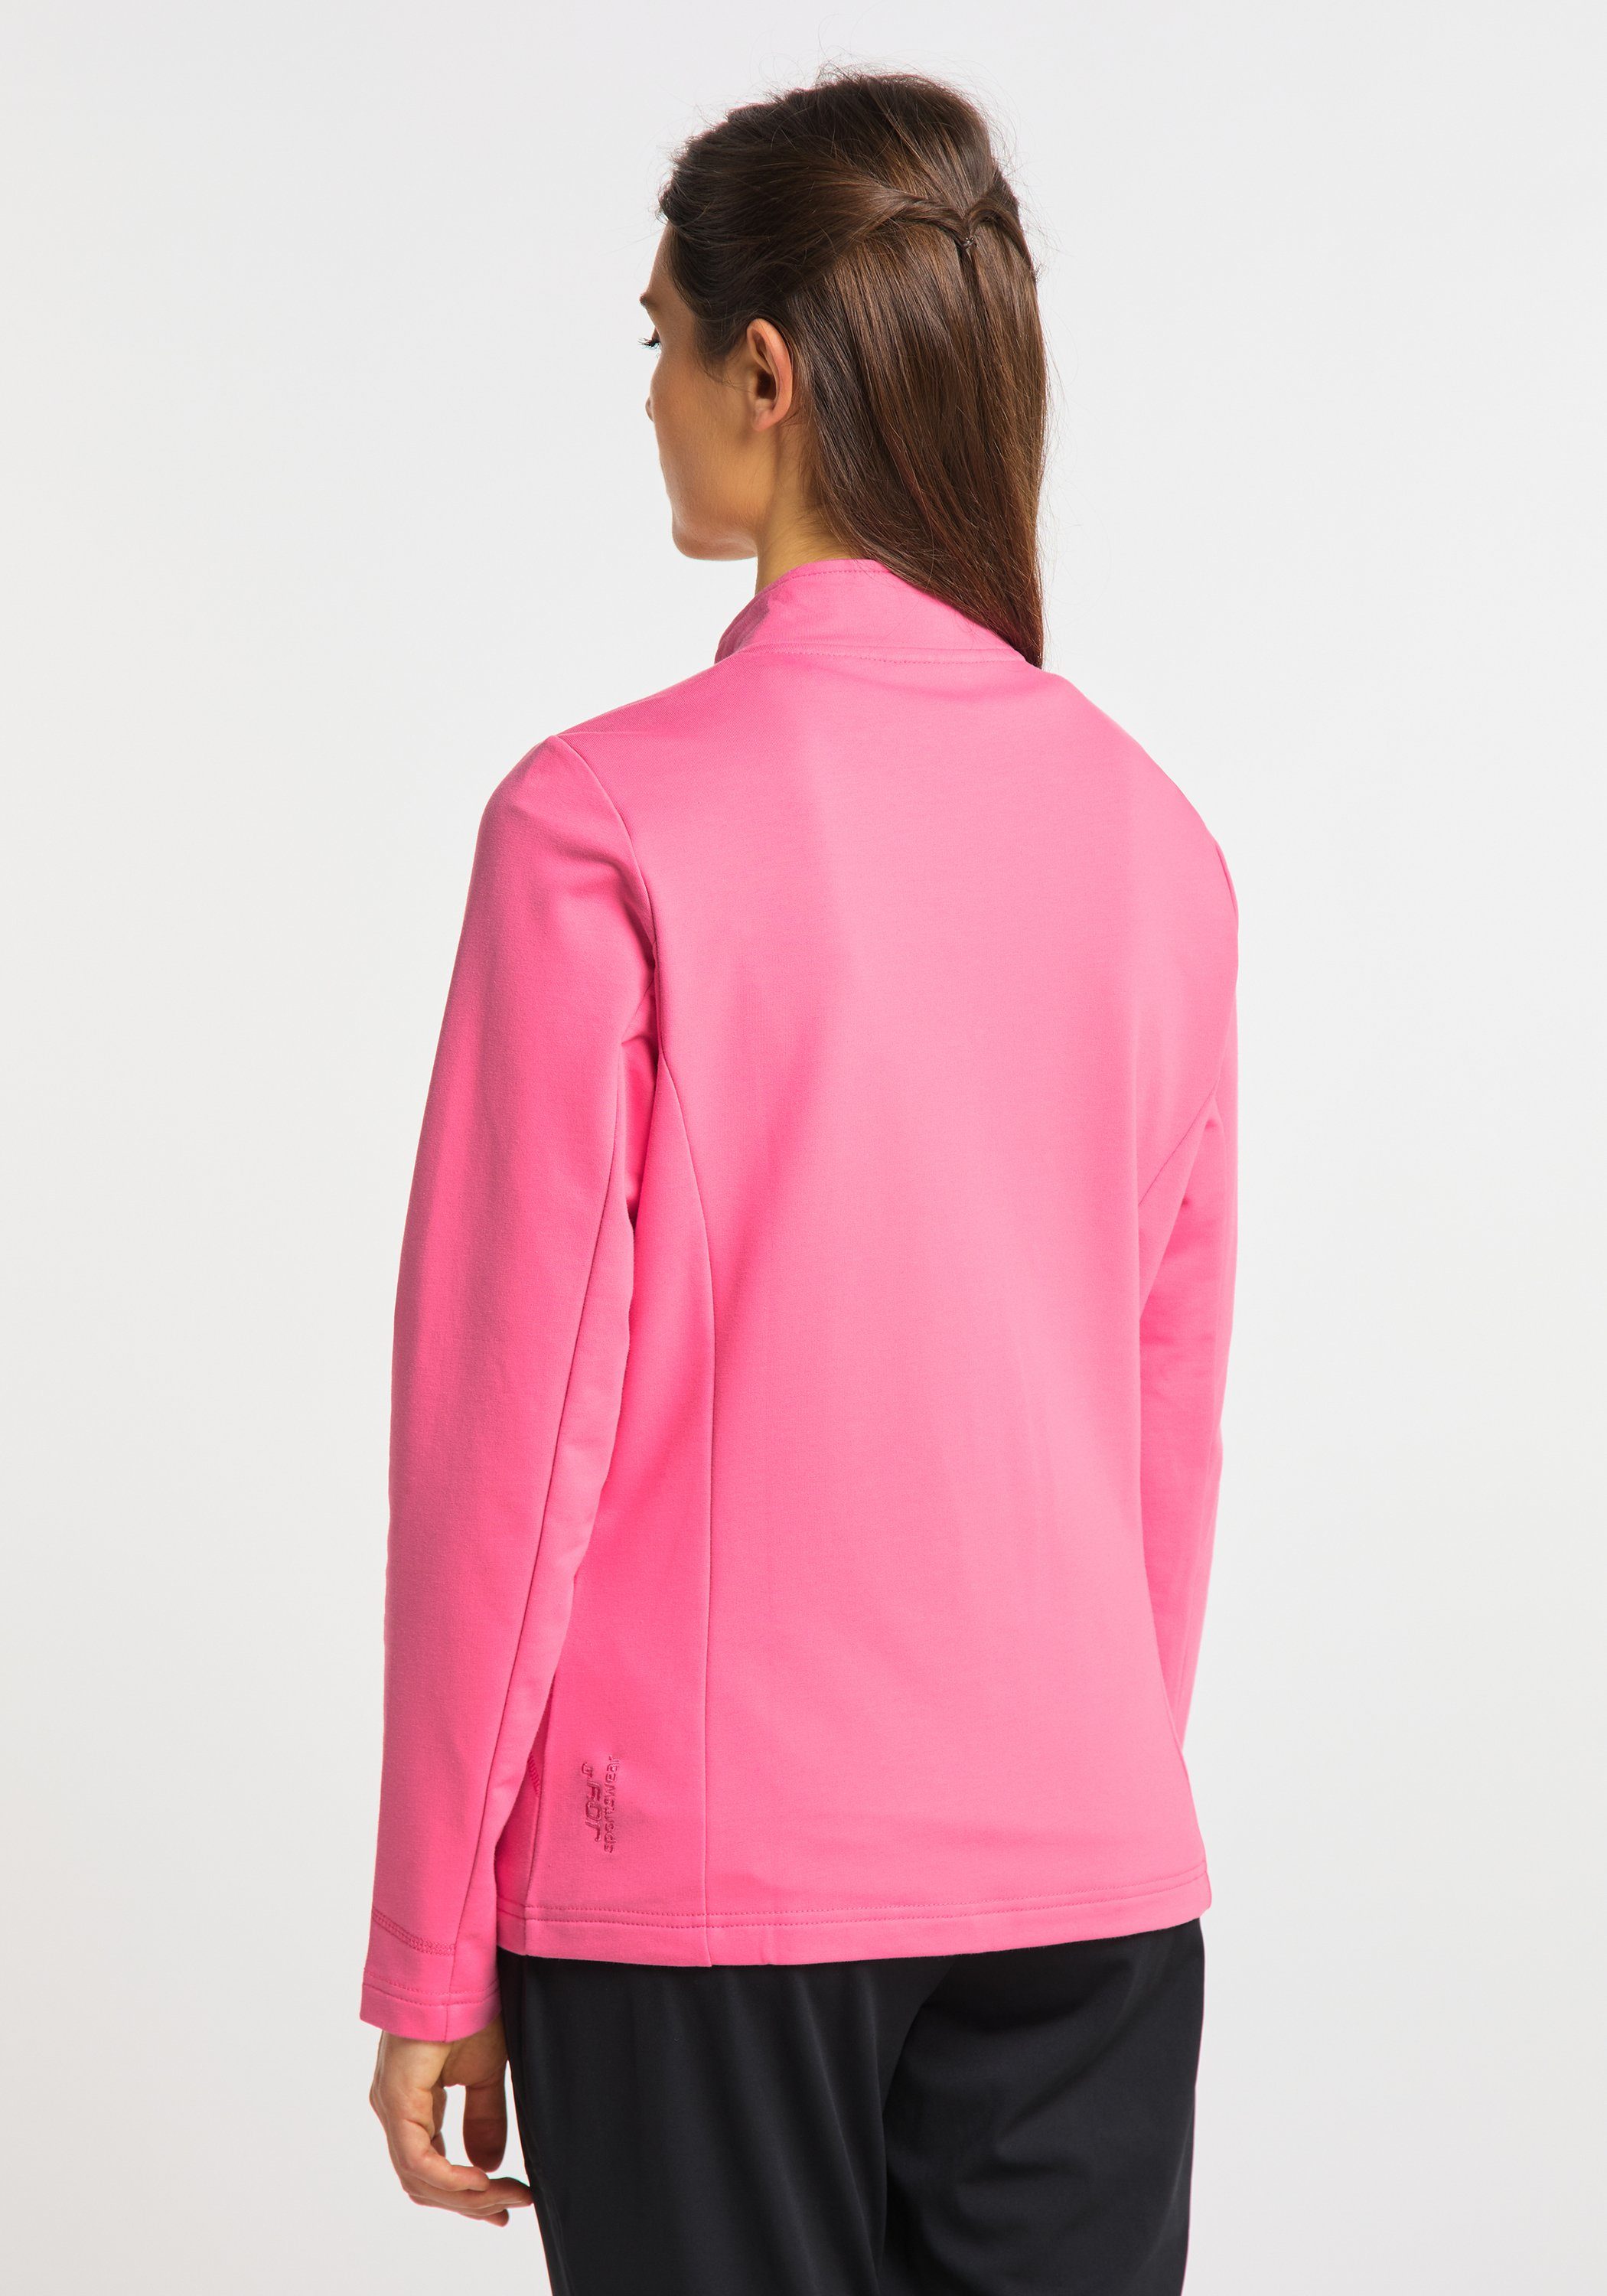 DORIT pink Joy Trainingsjacke camelia Sportswear Jacke